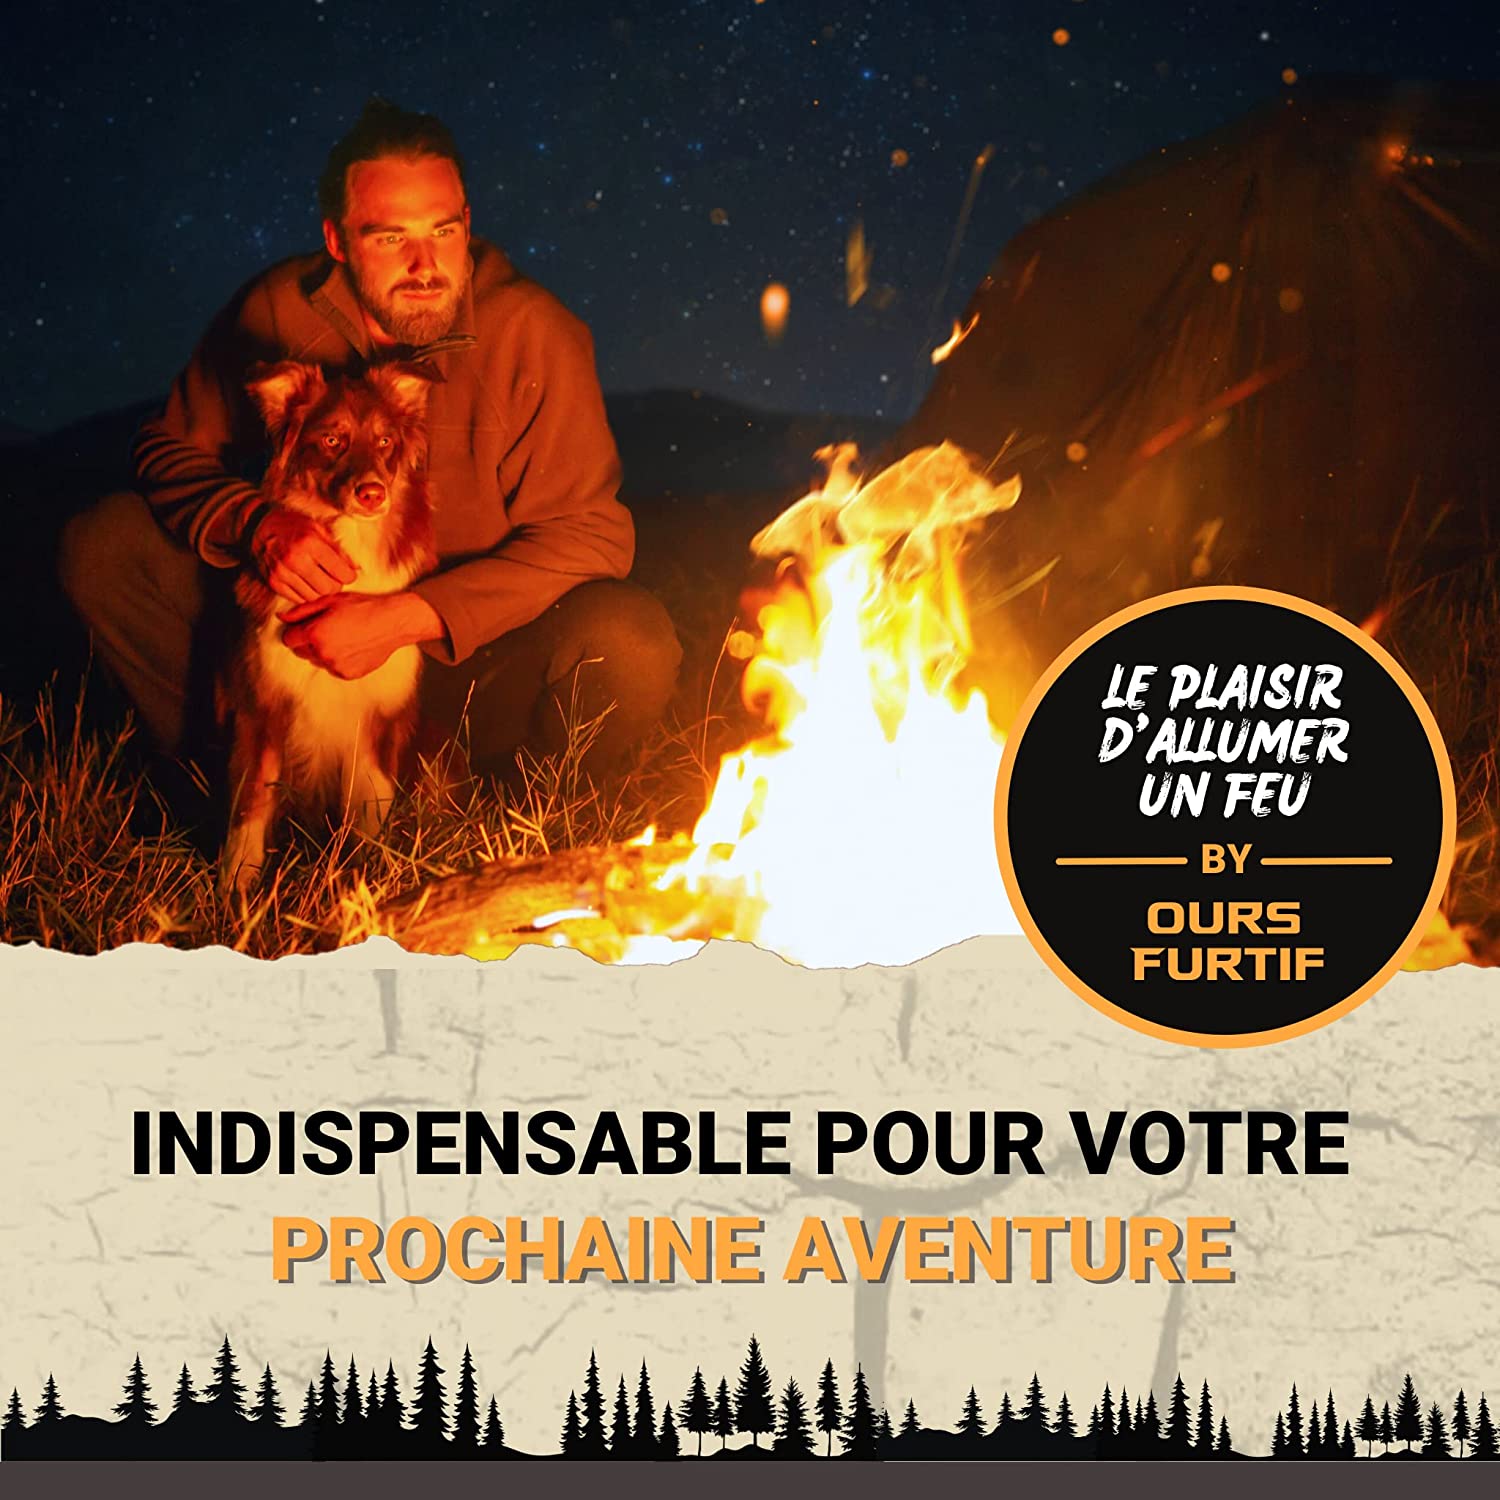 Kit Firesteel Pierre à Feu de Survie pour Camping et Survivalisme